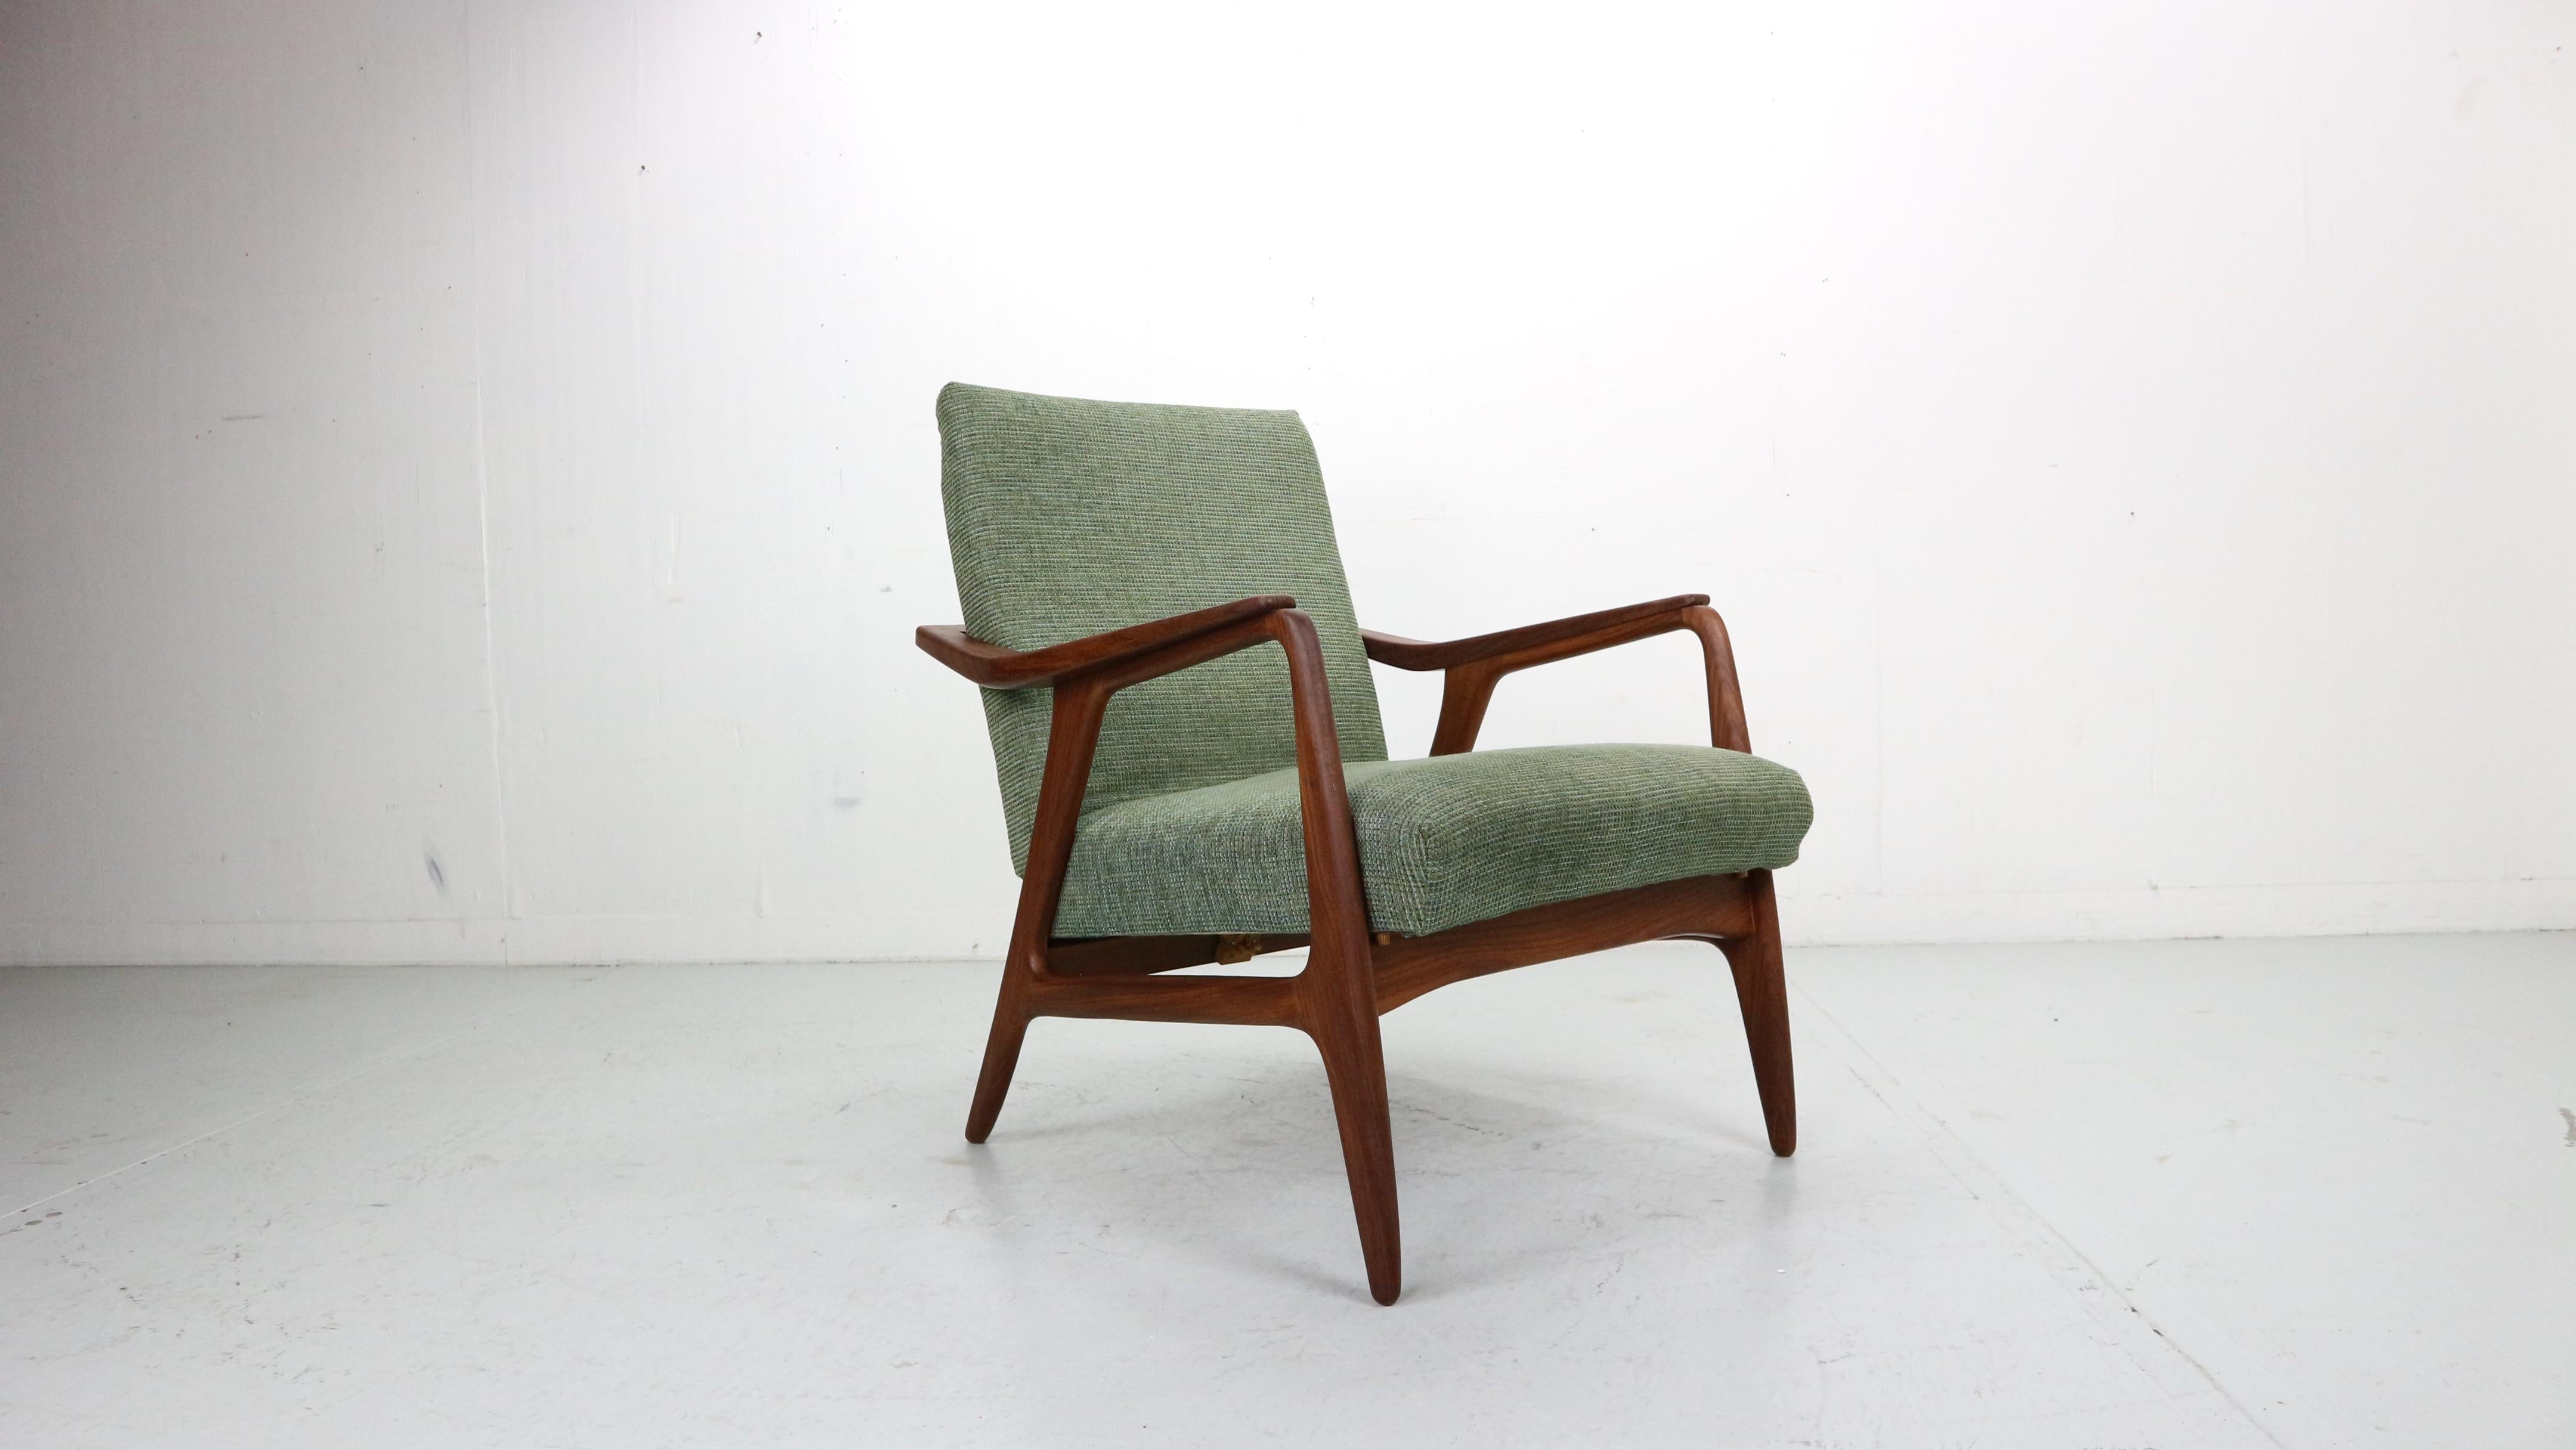 Charmante chaise longue, conçue et fabriquée dans les années 1960 au Danemark.

La structure élégante de cette chaise confortable est en teck massif.